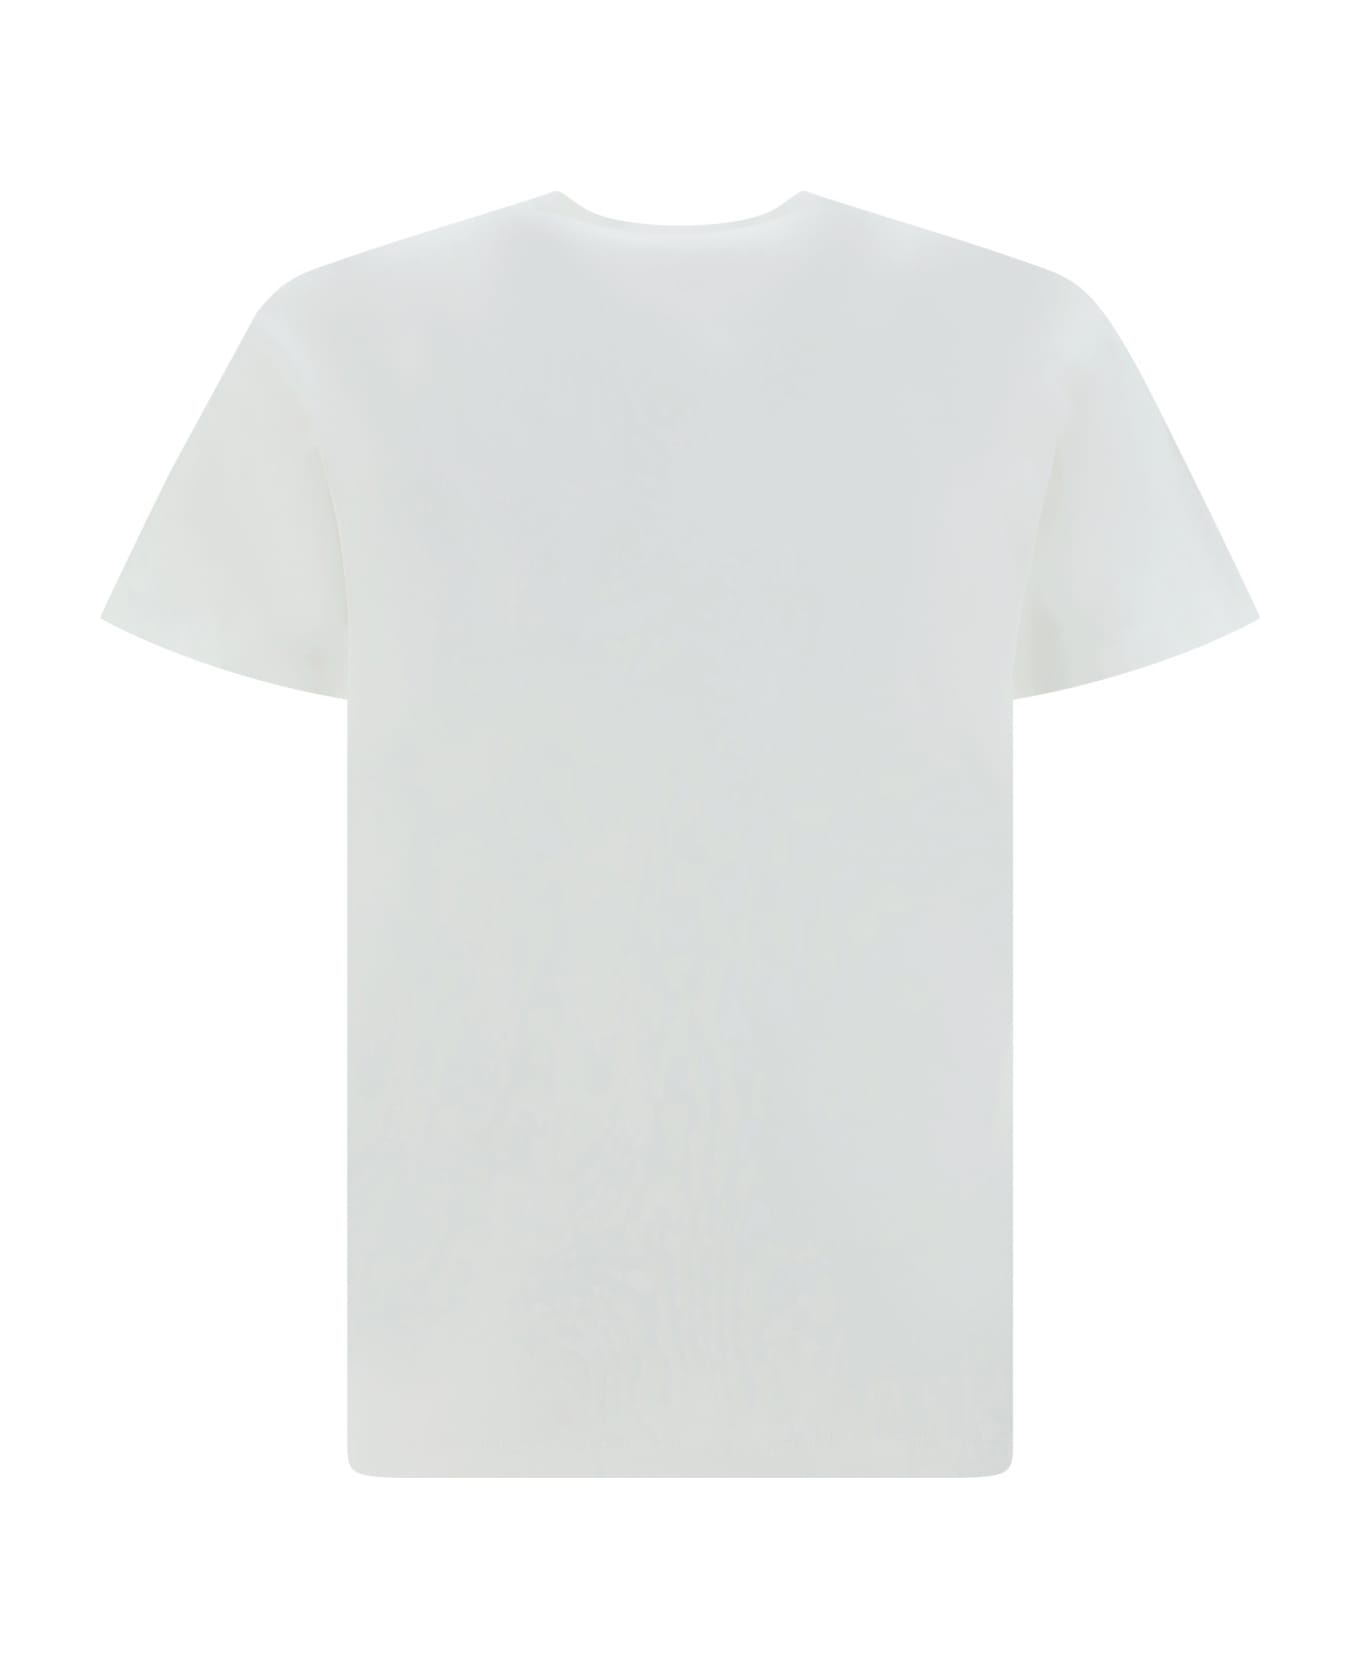 Dsquared2 Cotton Crew-neck T-shirt - 100